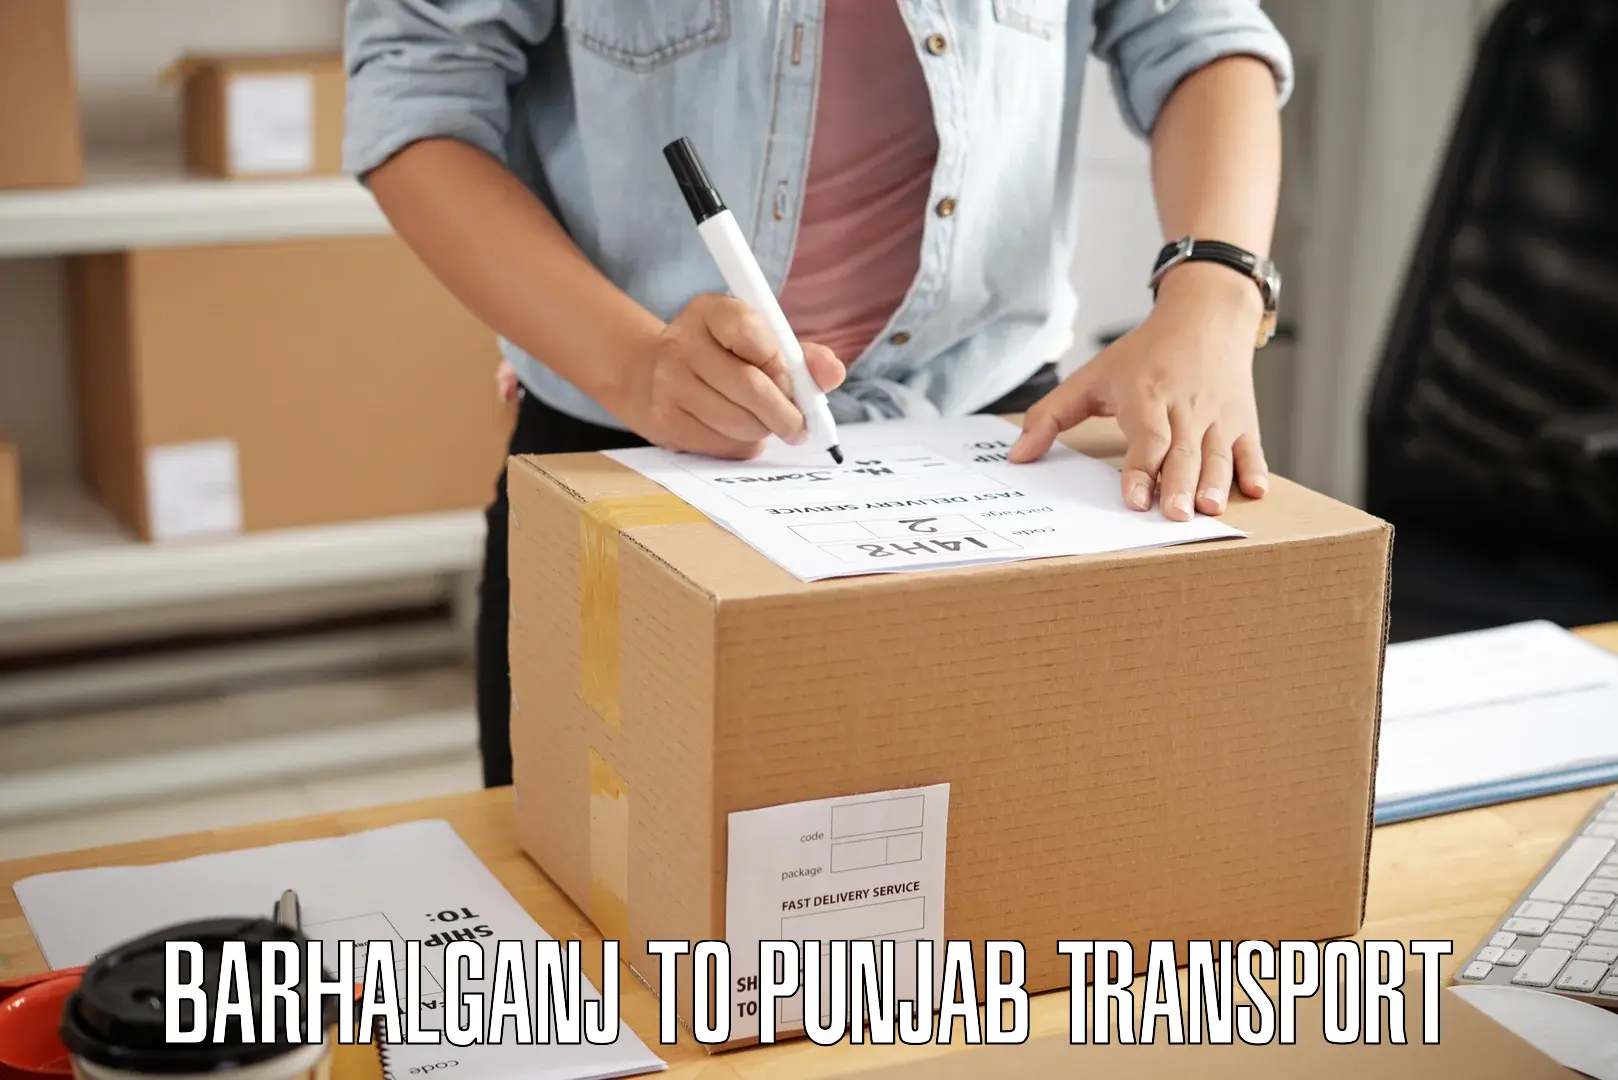 Package delivery services Barhalganj to Jalalabad